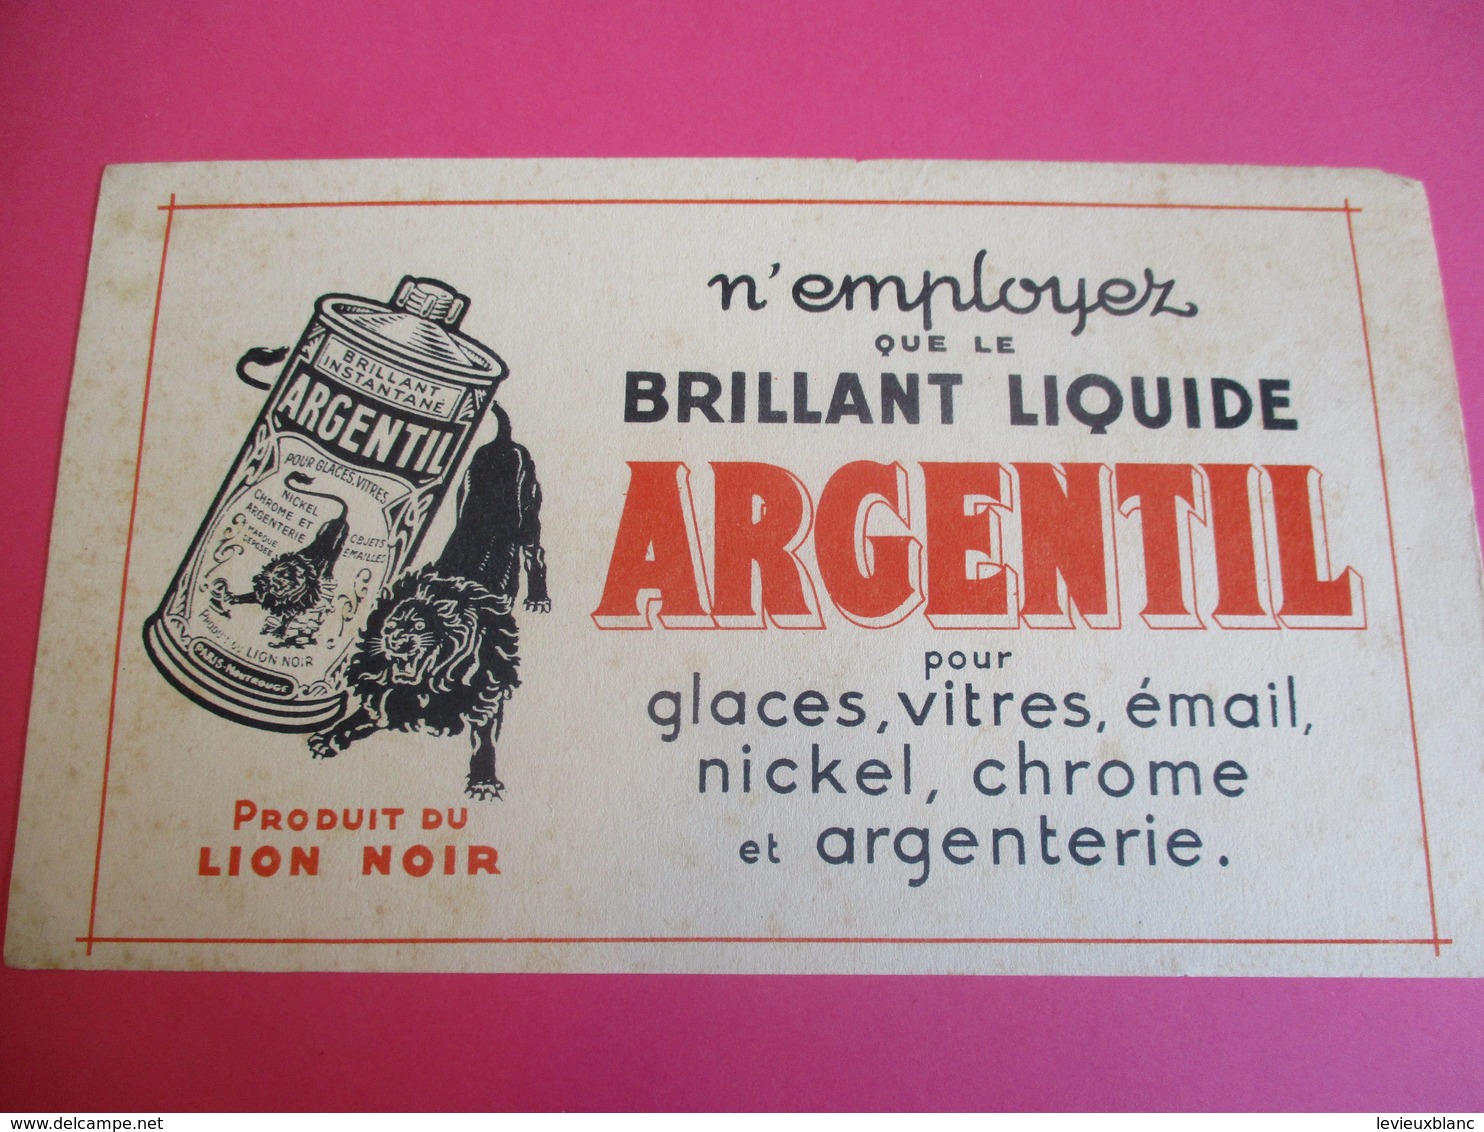 2 Buvards /Nickel , Chrome Et Argenterie/ ARGENTIL/ Produit Du LION NOIR / Brillant Liquide/ Vers 1940-1960    BUV328 - Wassen En Poetsen